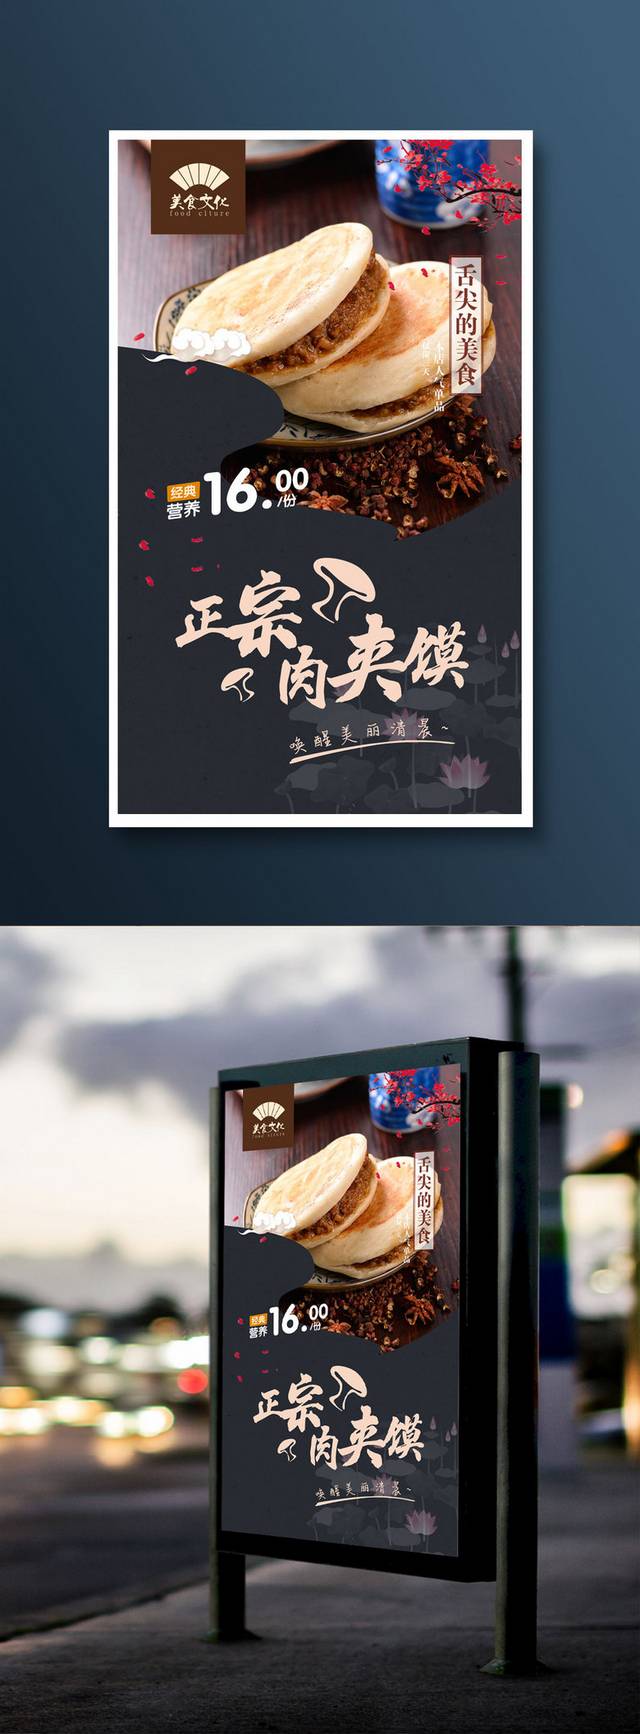 中国风高档肉夹馍宣传海报设计